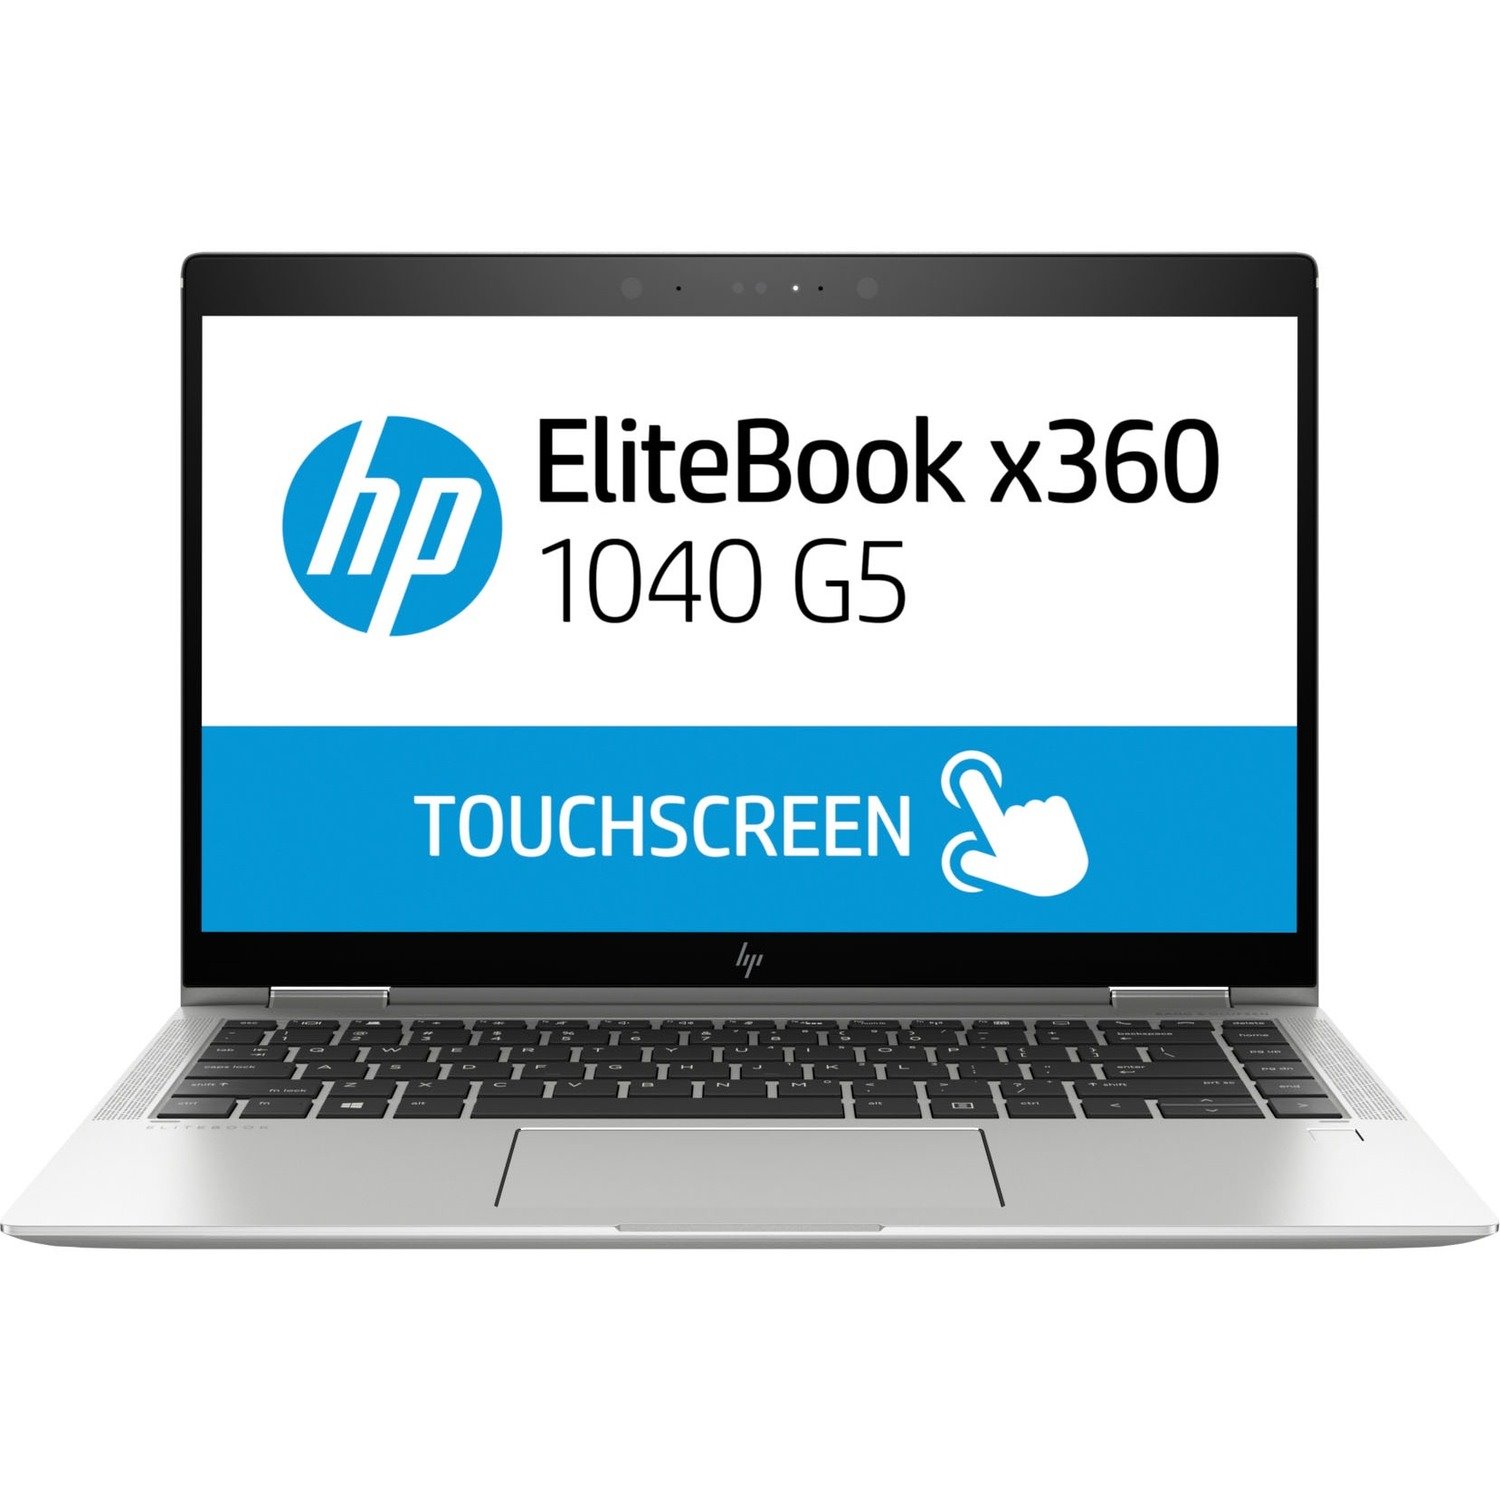 HP EliteBook x360 1040 G5 14" Touchscreen Convertible 2 in 1 Notebook - 1920 x 1080 - Intel Core i7 8th Gen i7-8550U Quad-core (4 Core) 1.80 GHz - 16 GB Total RAM - 256 GB SSD